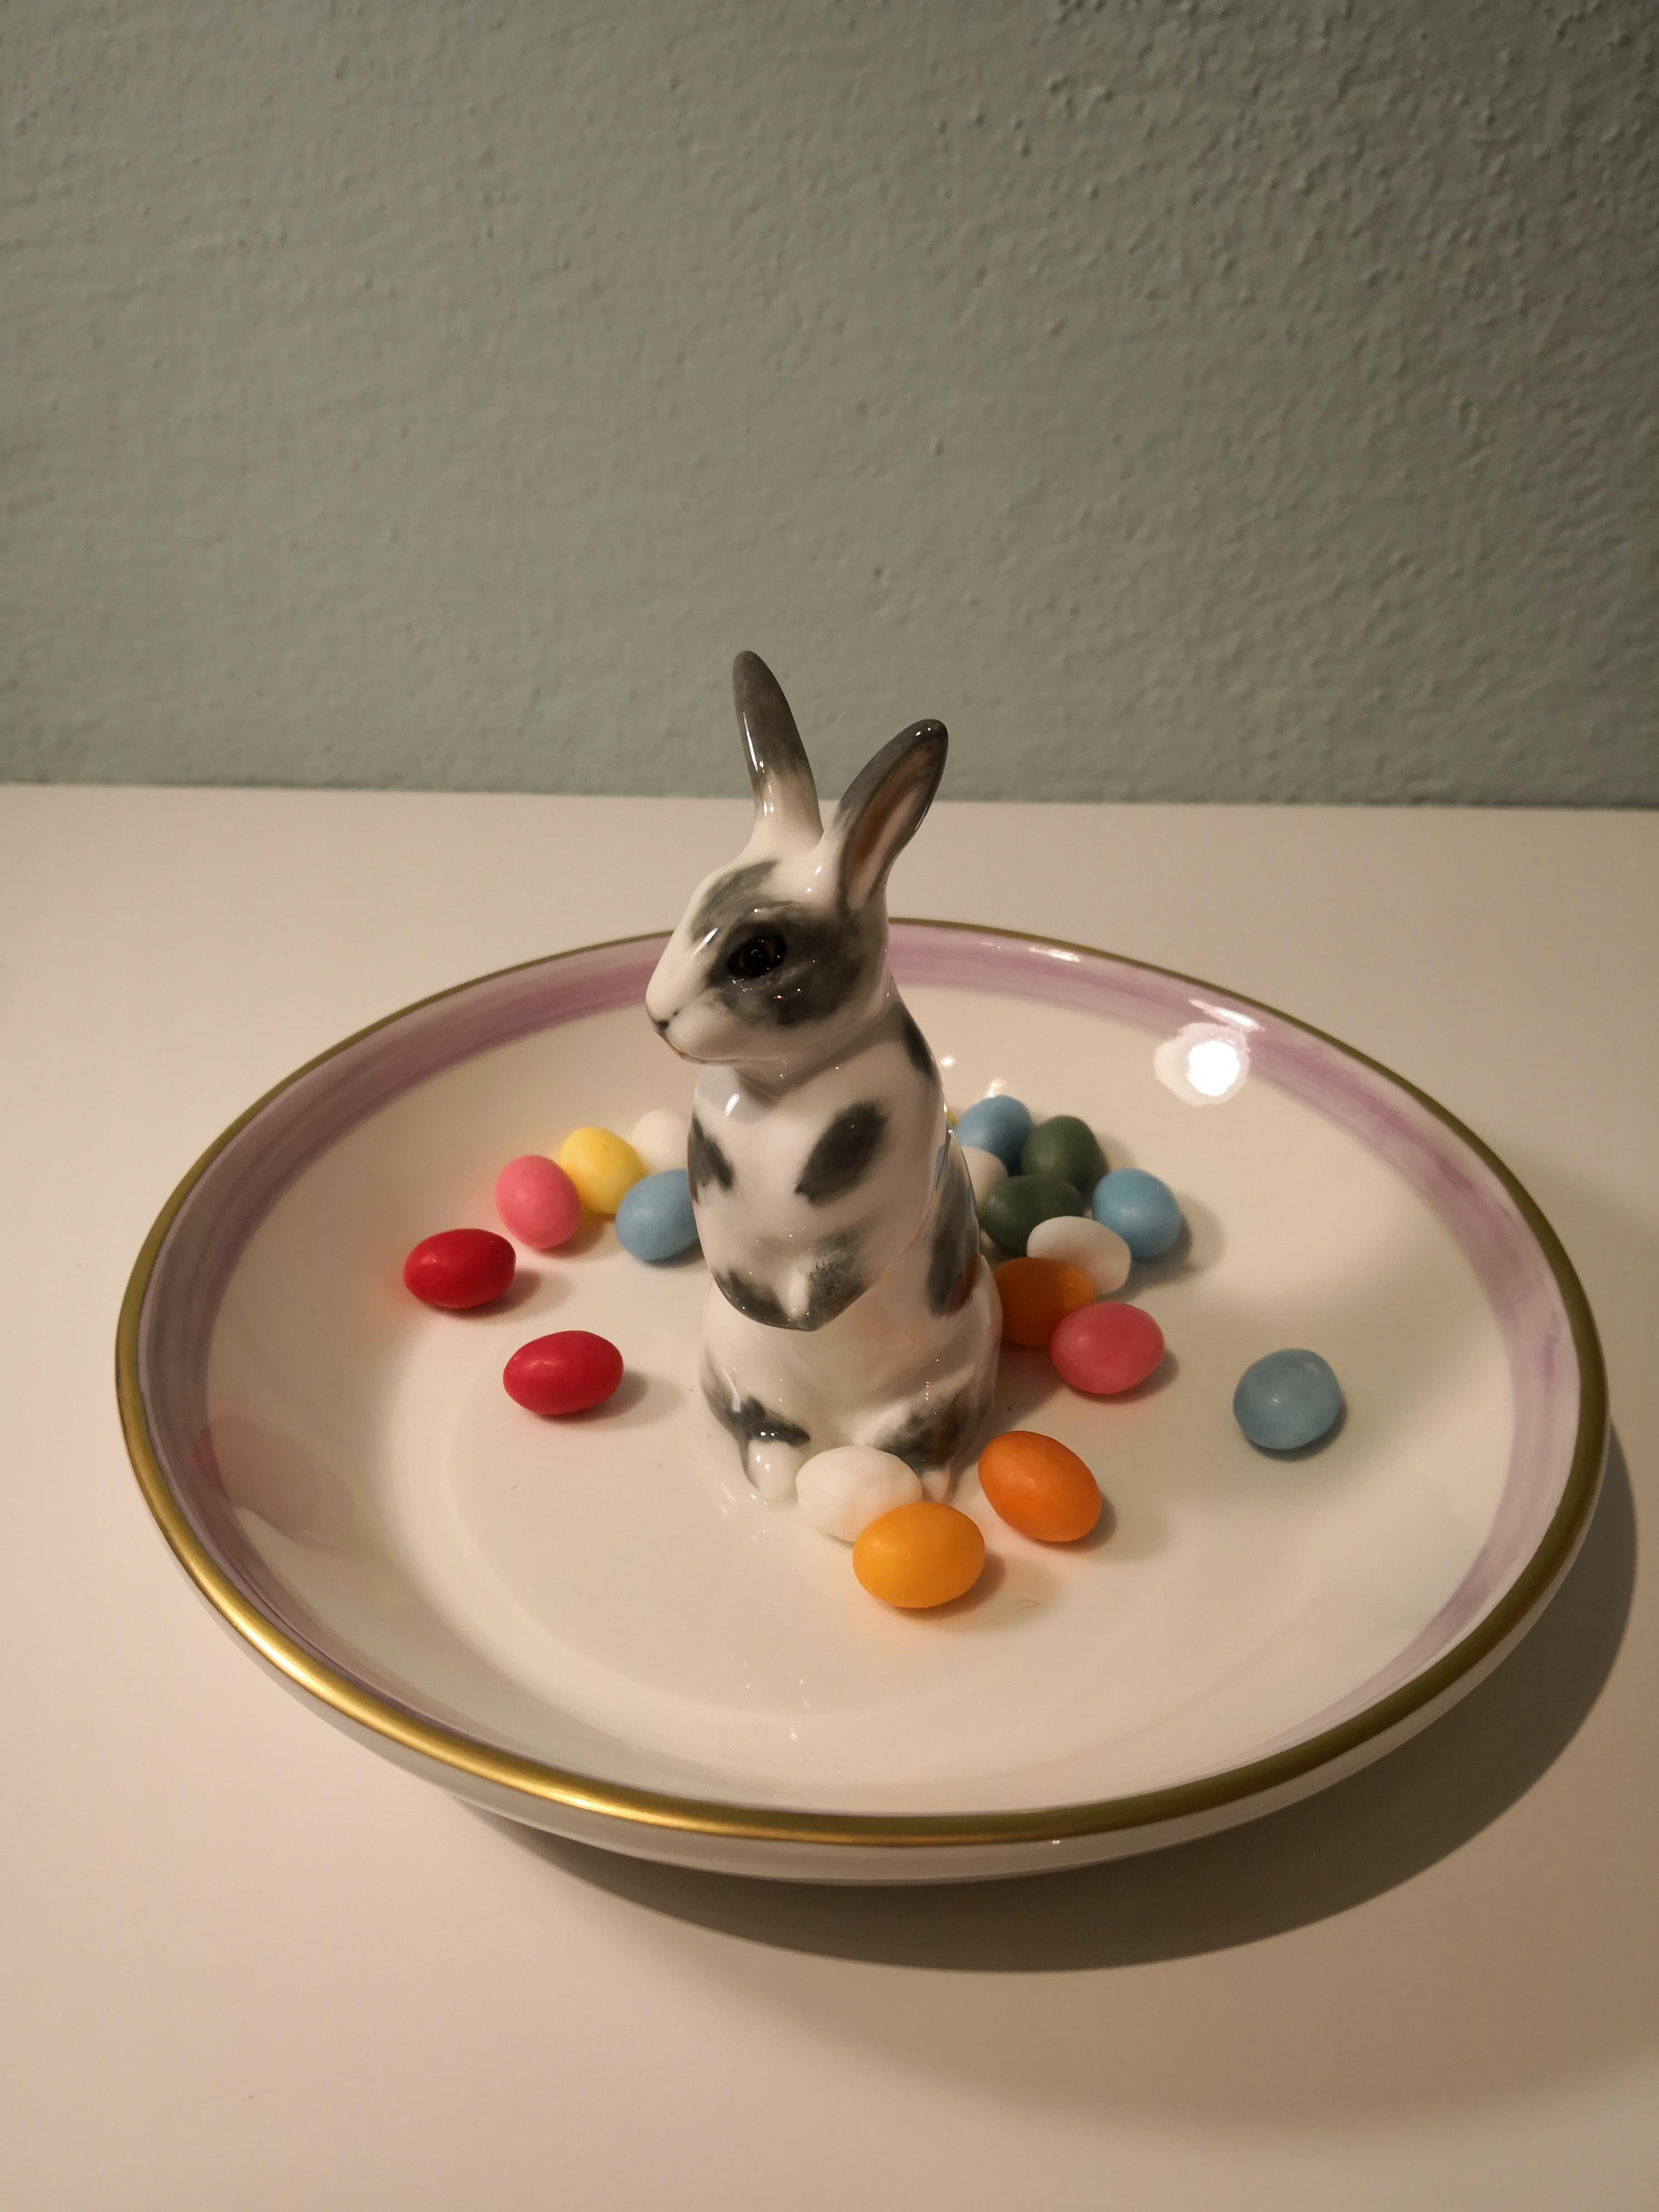 Country Style Porcelain Bowl with Bunny Figure Sofina Boutique Kitzbuehel (21. Jahrhundert und zeitgenössisch)